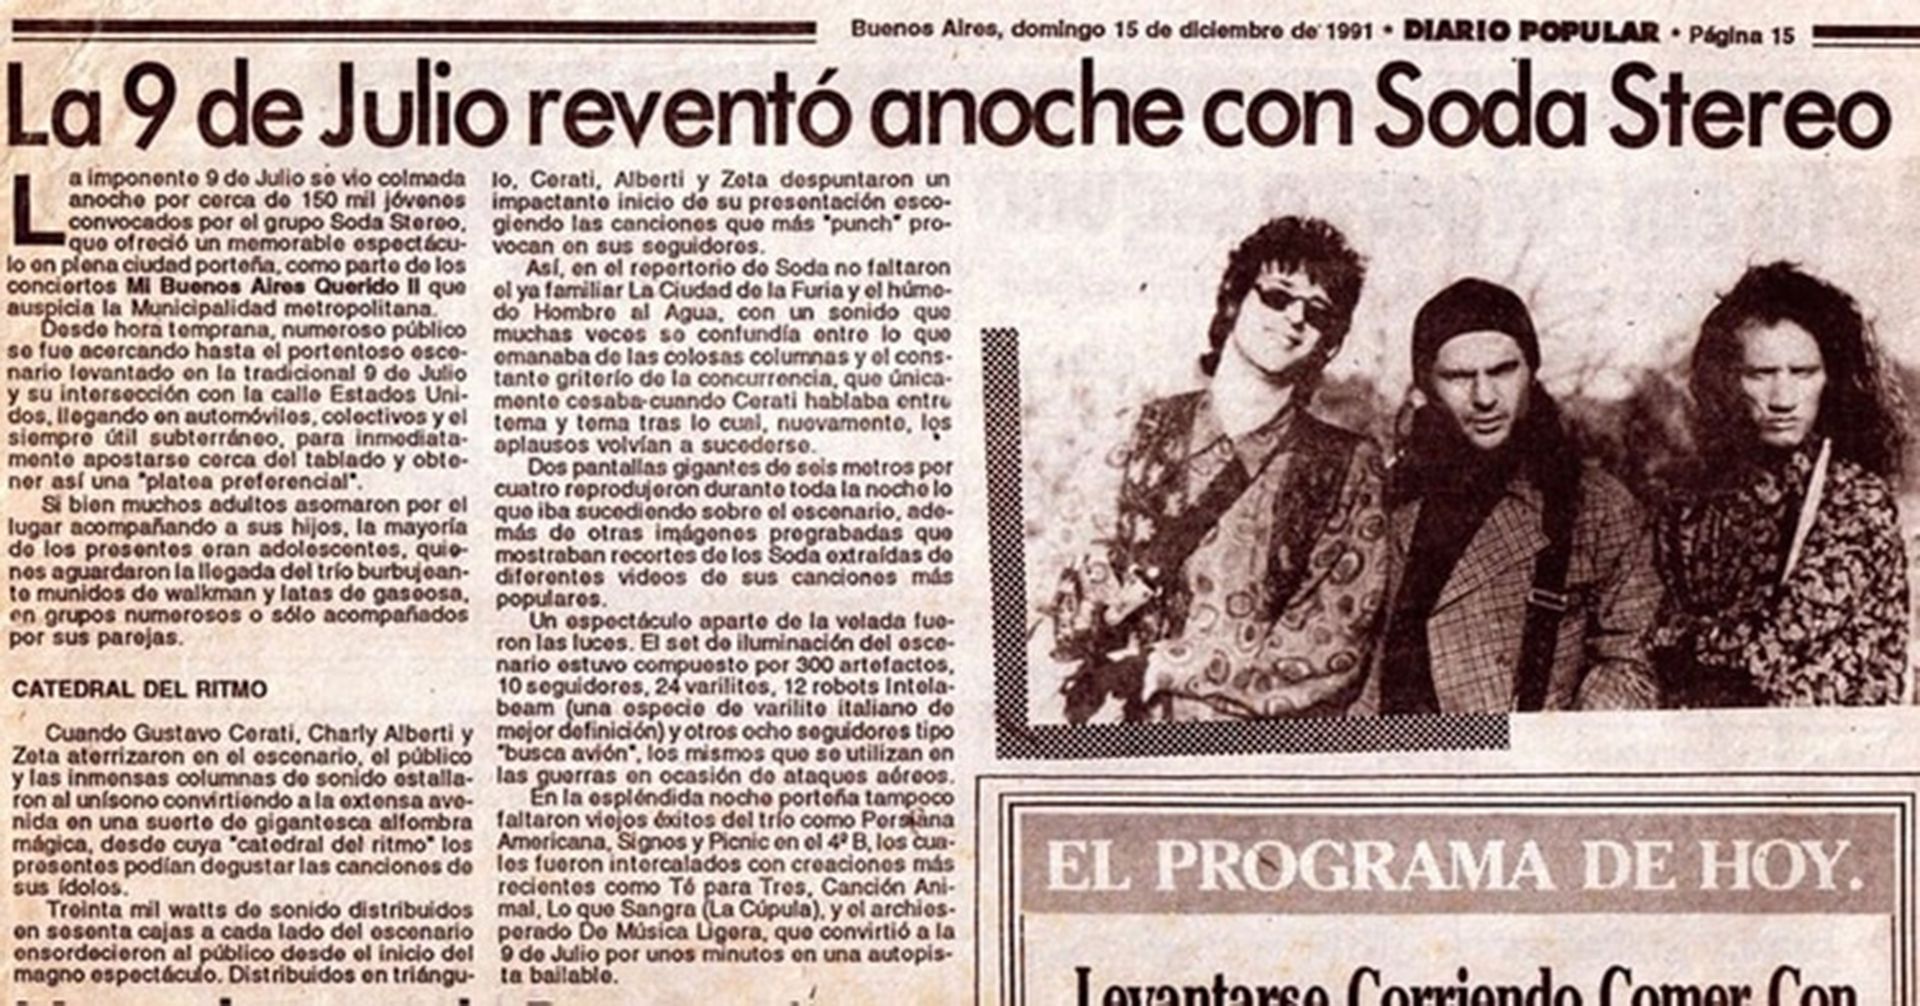 Popular subrayó que Soda Stereo "reventó" la 9 de Julio